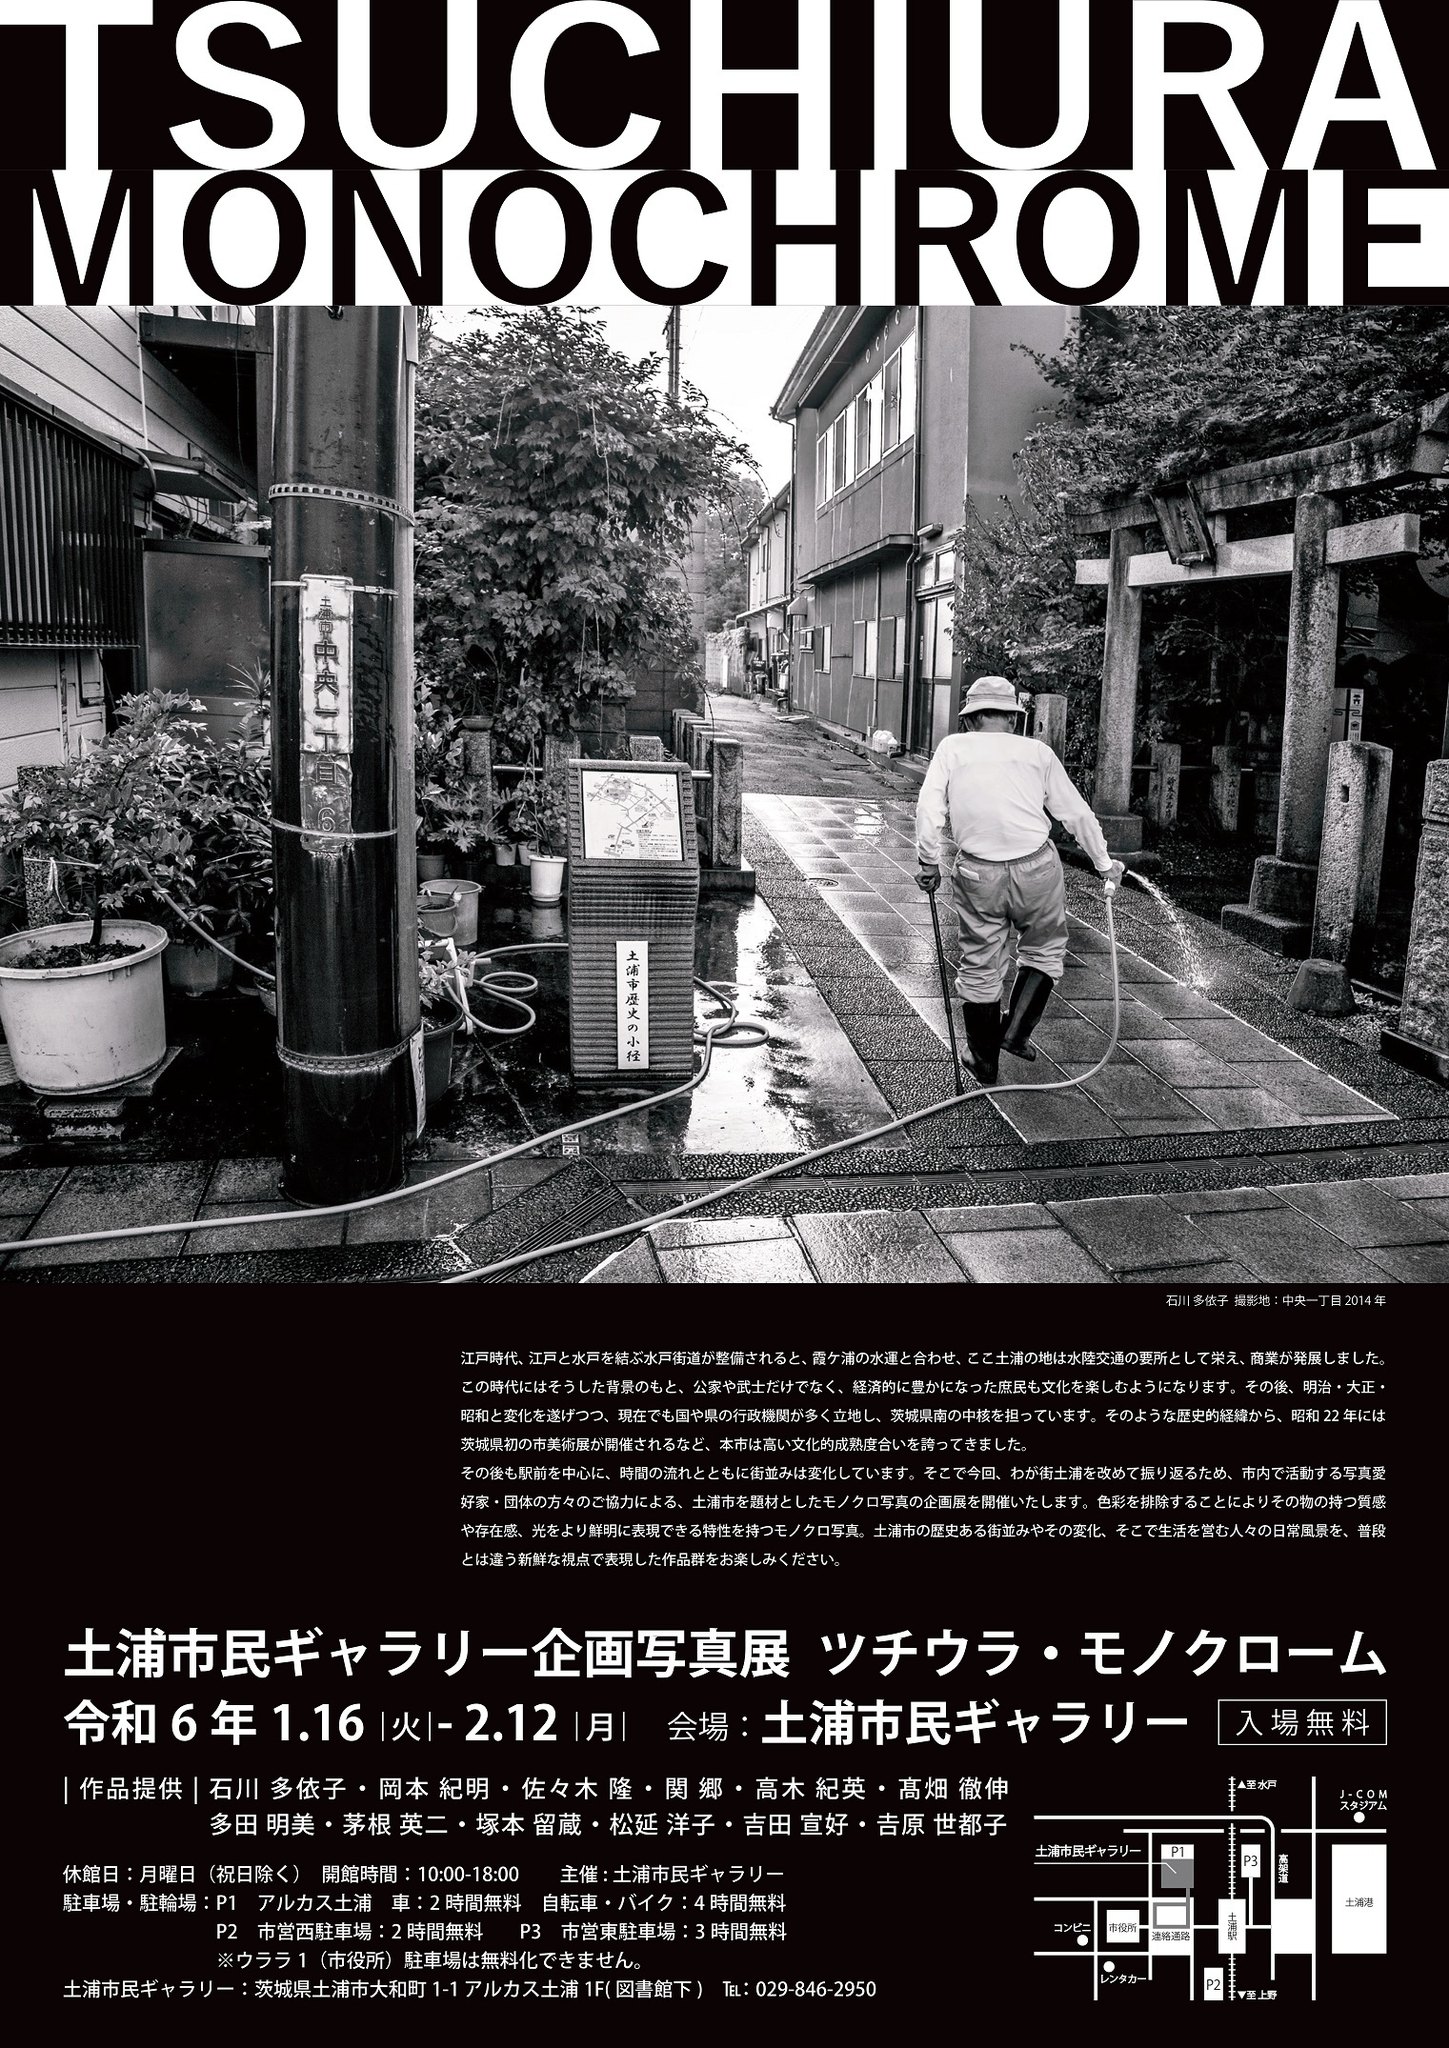 土浦市民ギャラリーで「ツチウラ・モノクローム」写真展を開催しています!page-visual 土浦市民ギャラリーで「ツチウラ・モノクローム」写真展を開催しています!ビジュアル